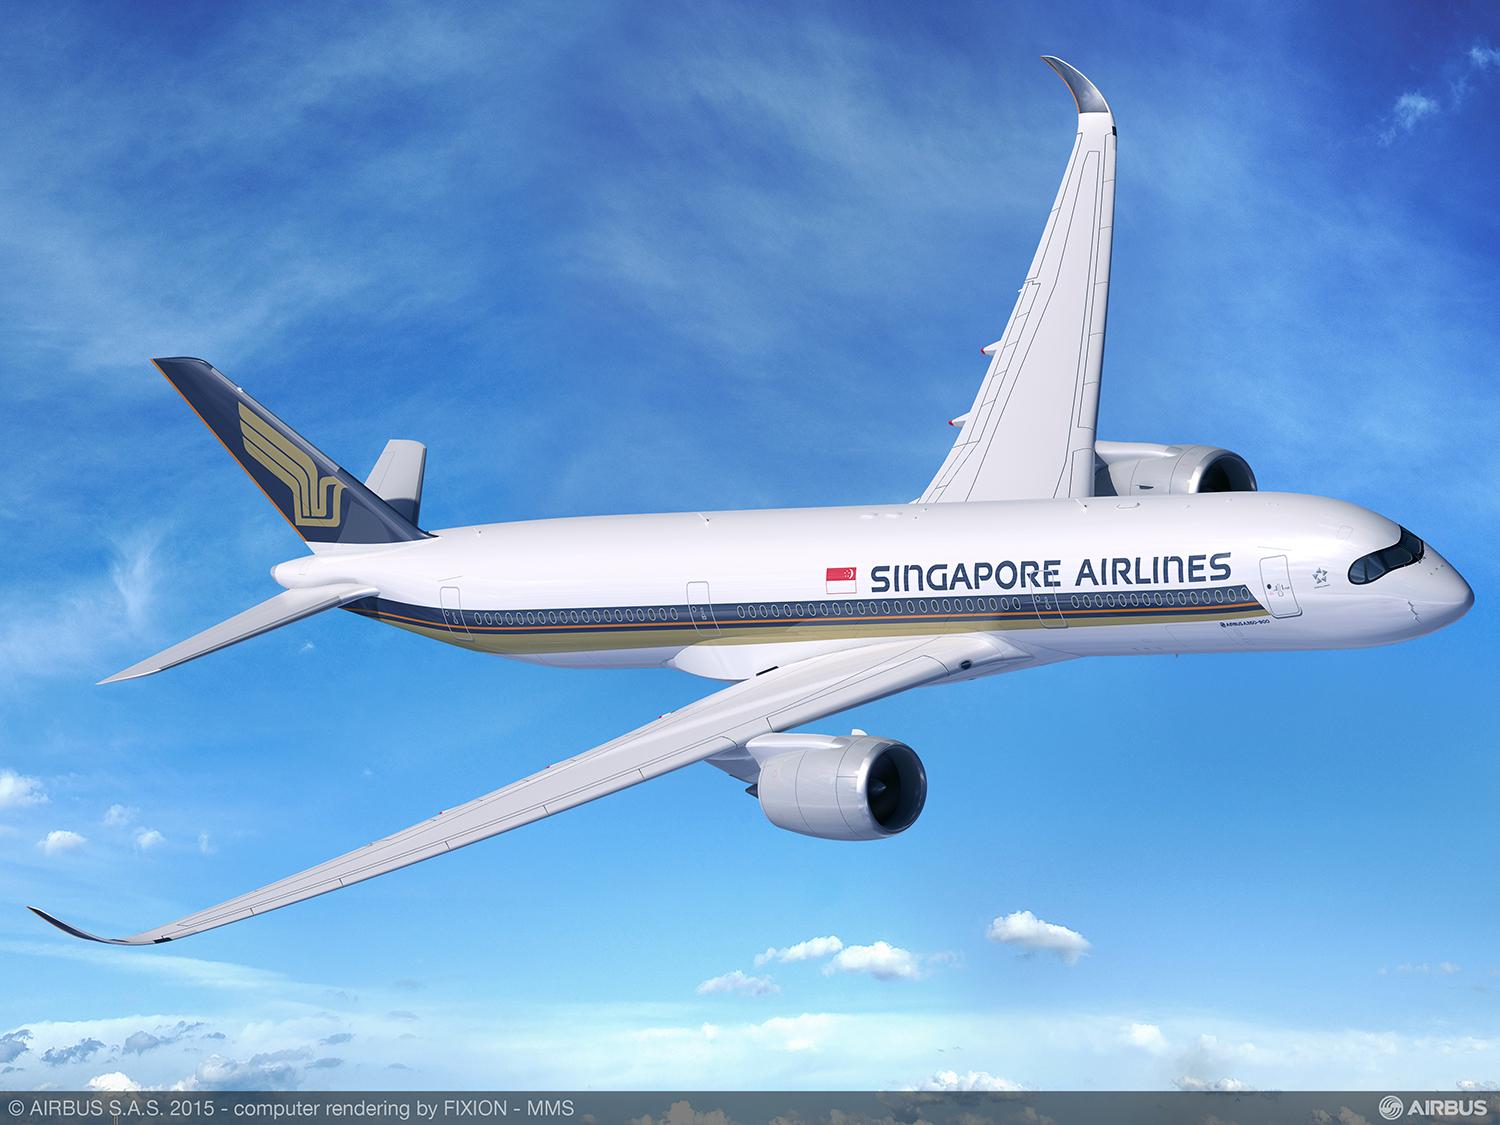 Nya Airbus A350-900 kommer att användas på flighten mellan Stockholm och Singapore